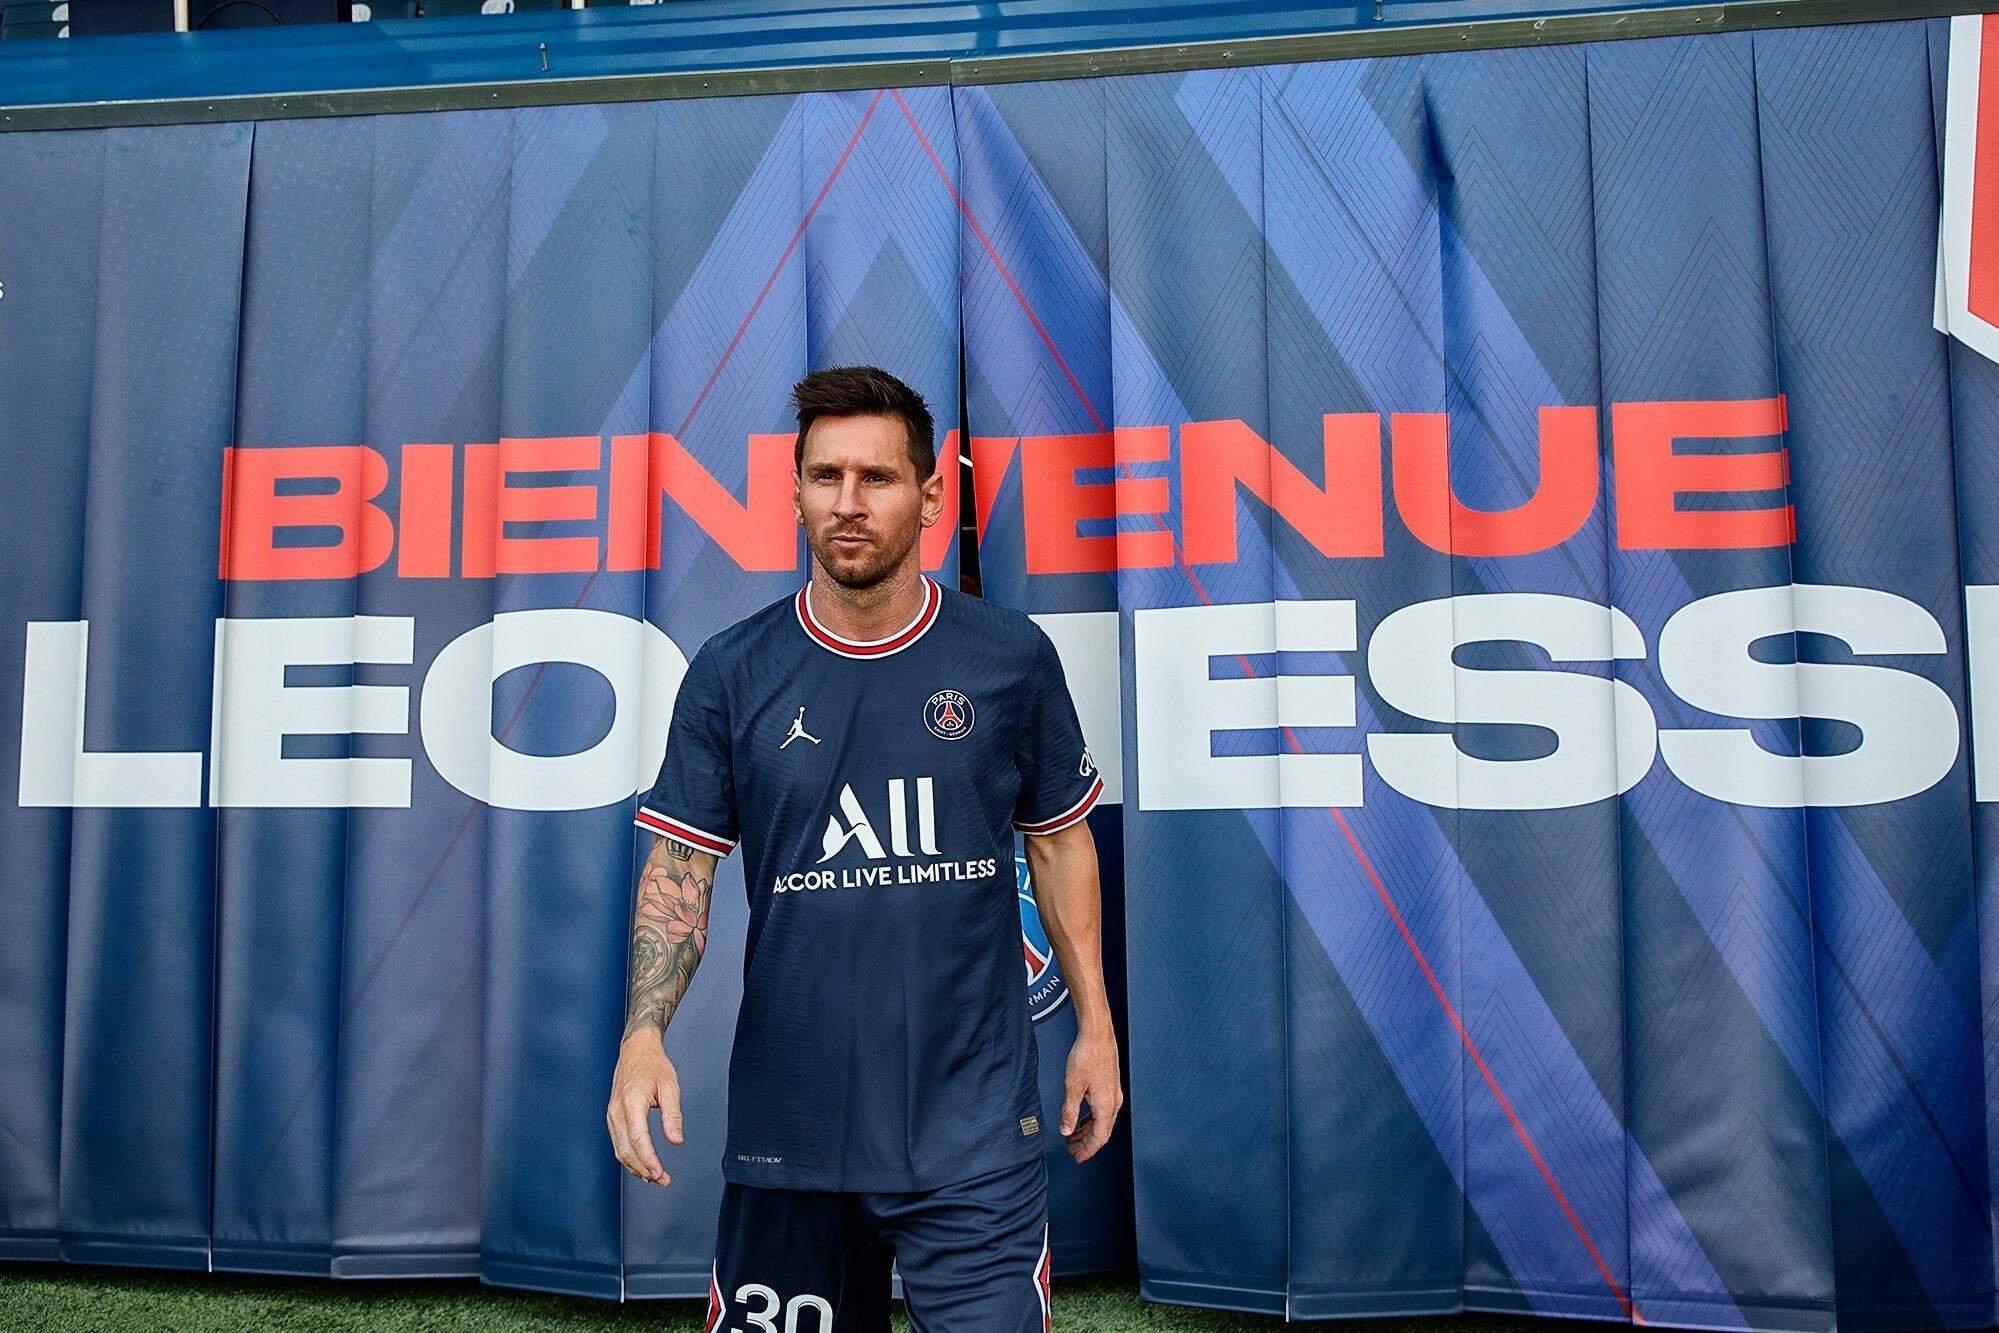 Após saída do Barcelona, torcedores colocam Messi vestindo camisas